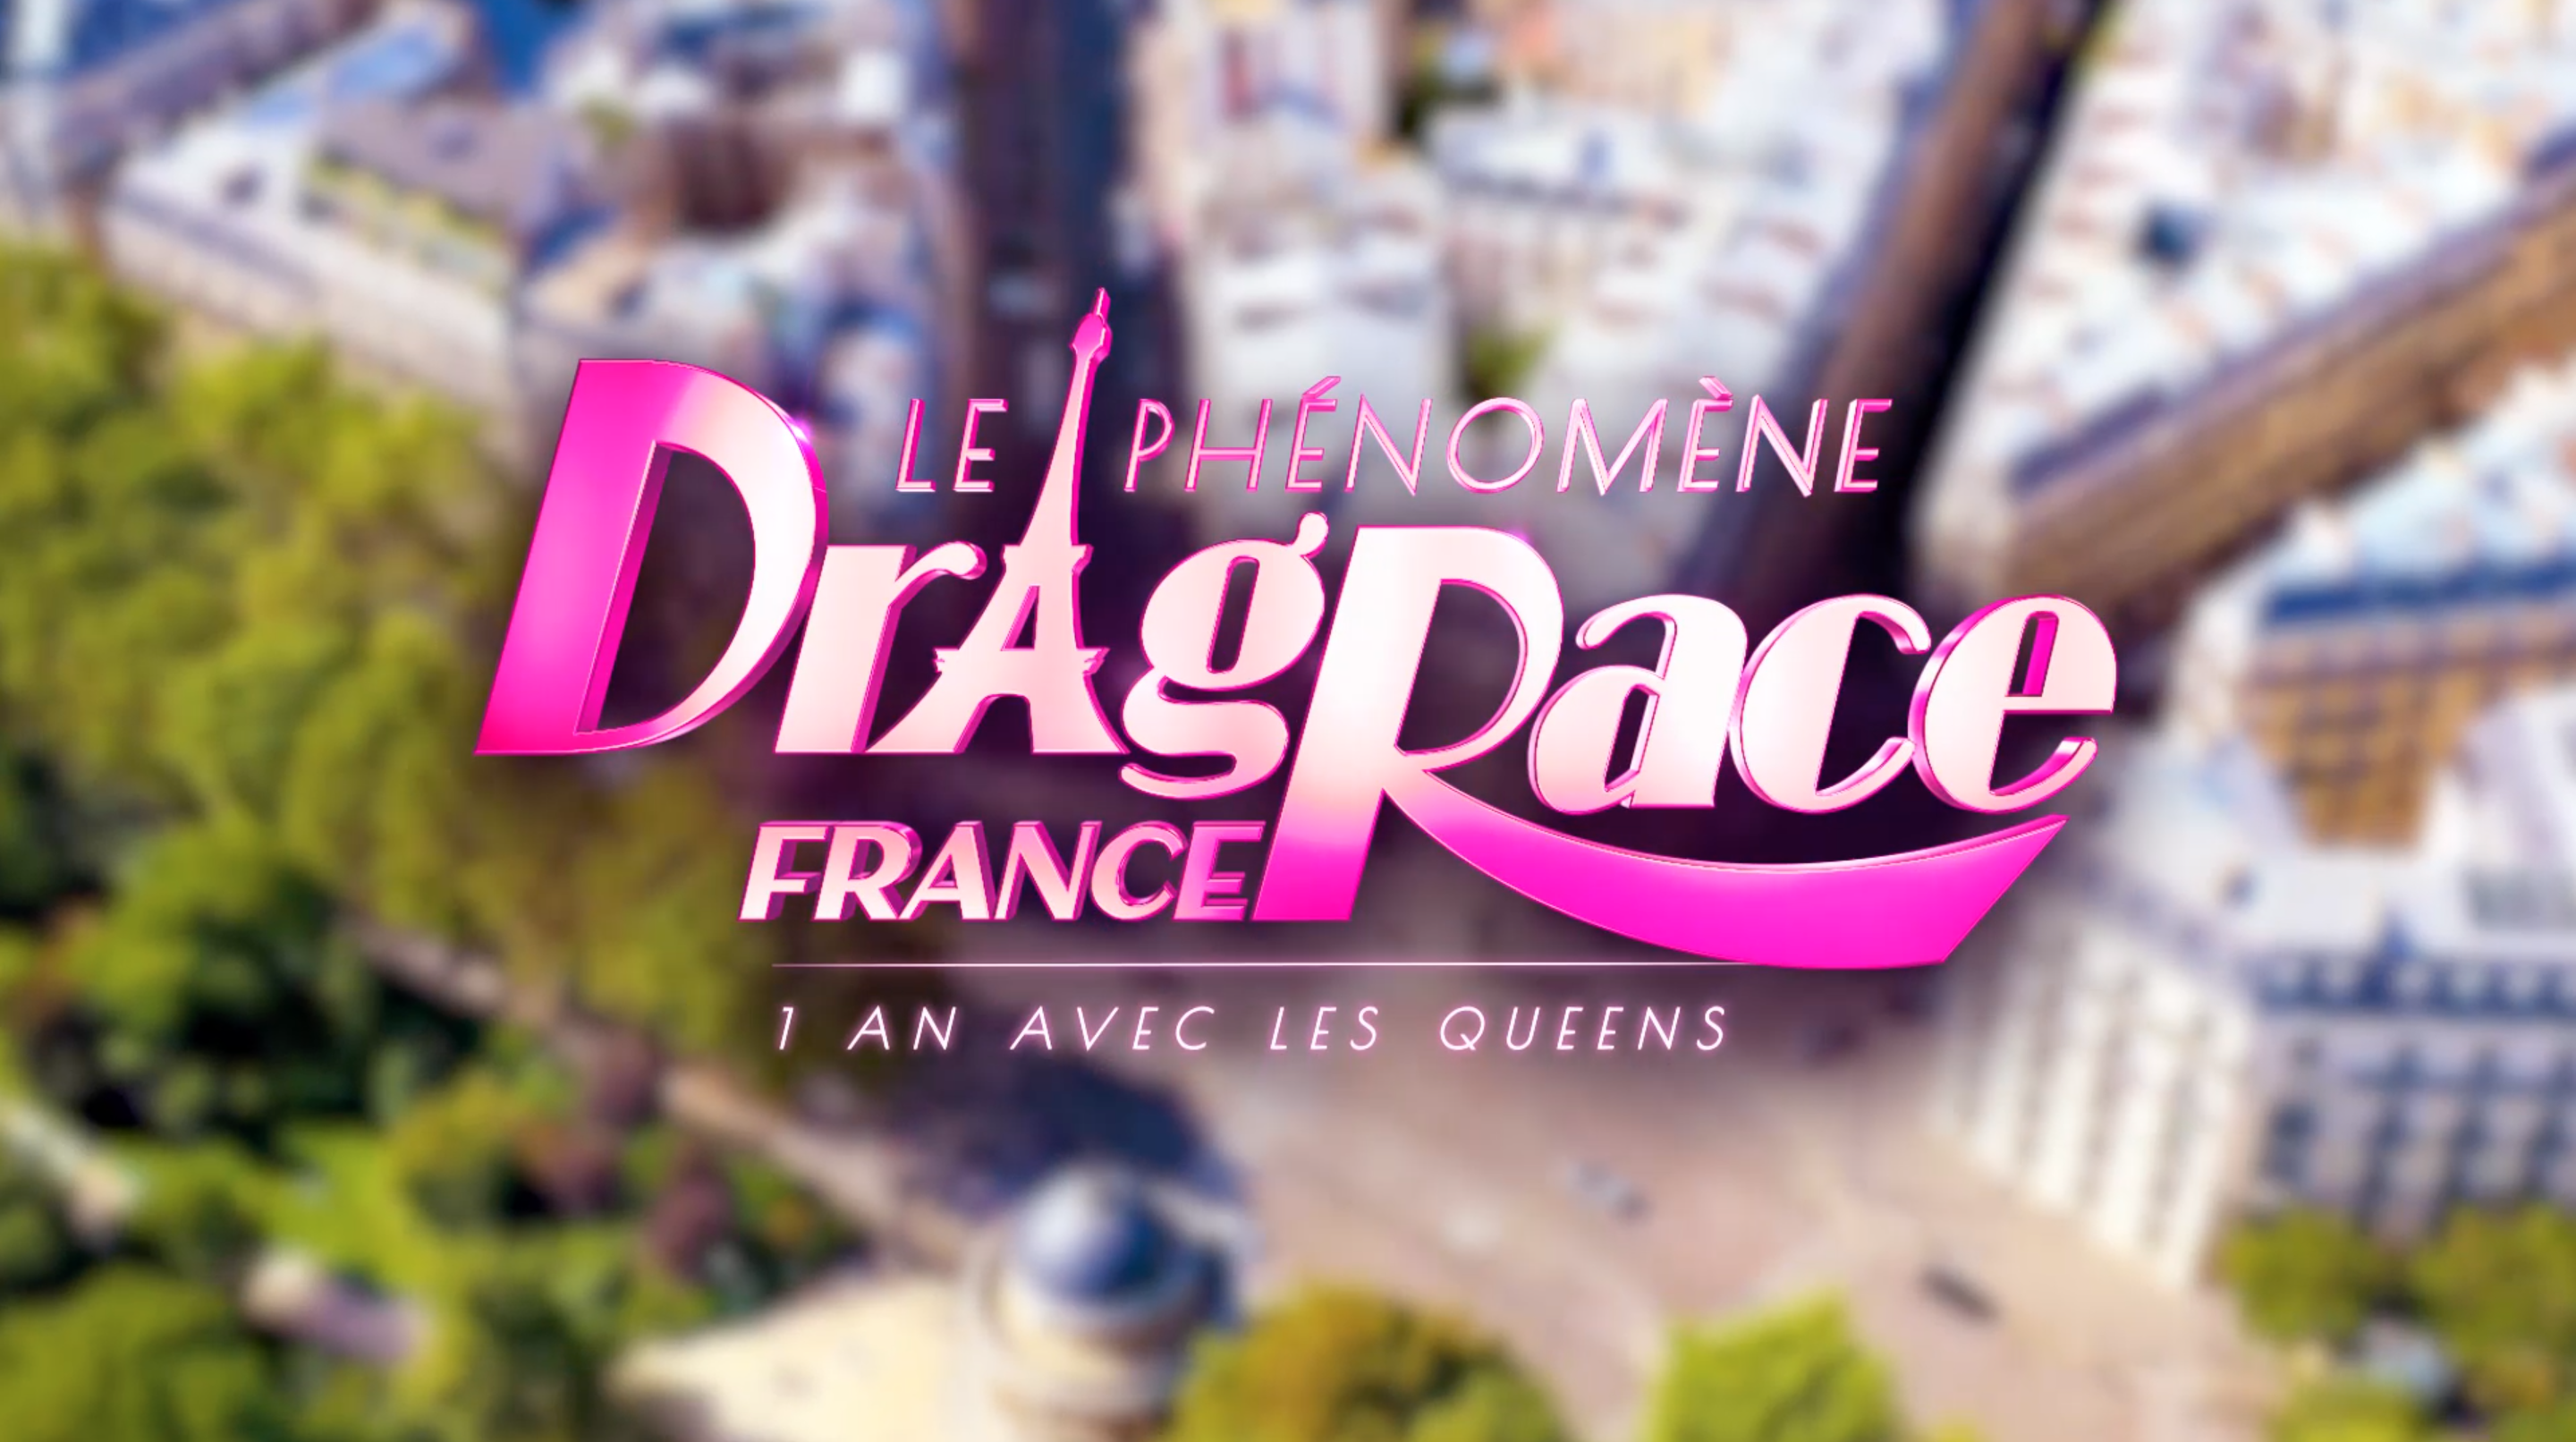 Le phénomène Drag Race France